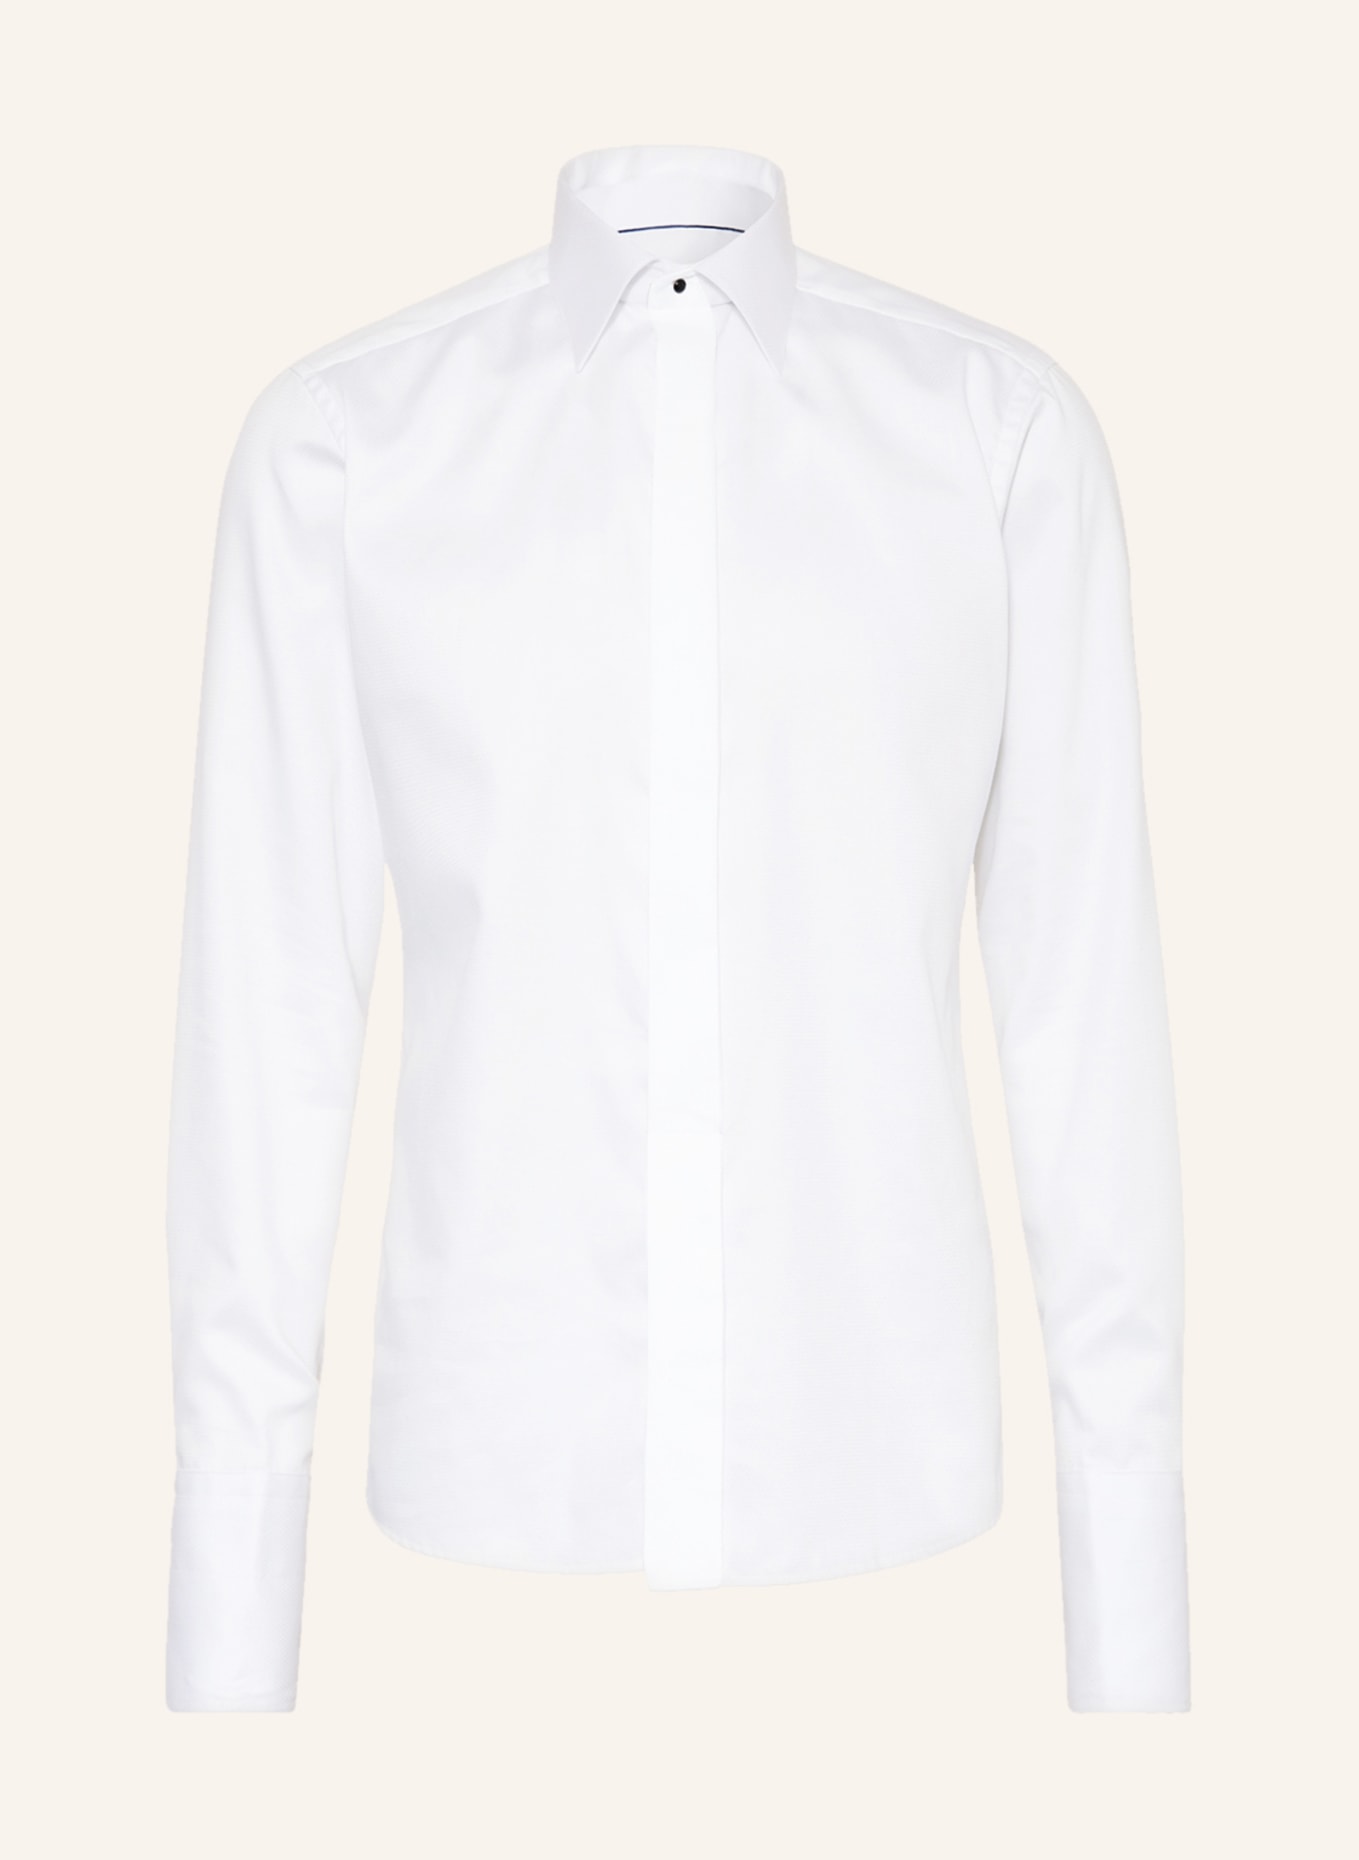 ETON Tuxedo shirt UMA slim fit with French cuffs, Color: WHITE (Image 1)